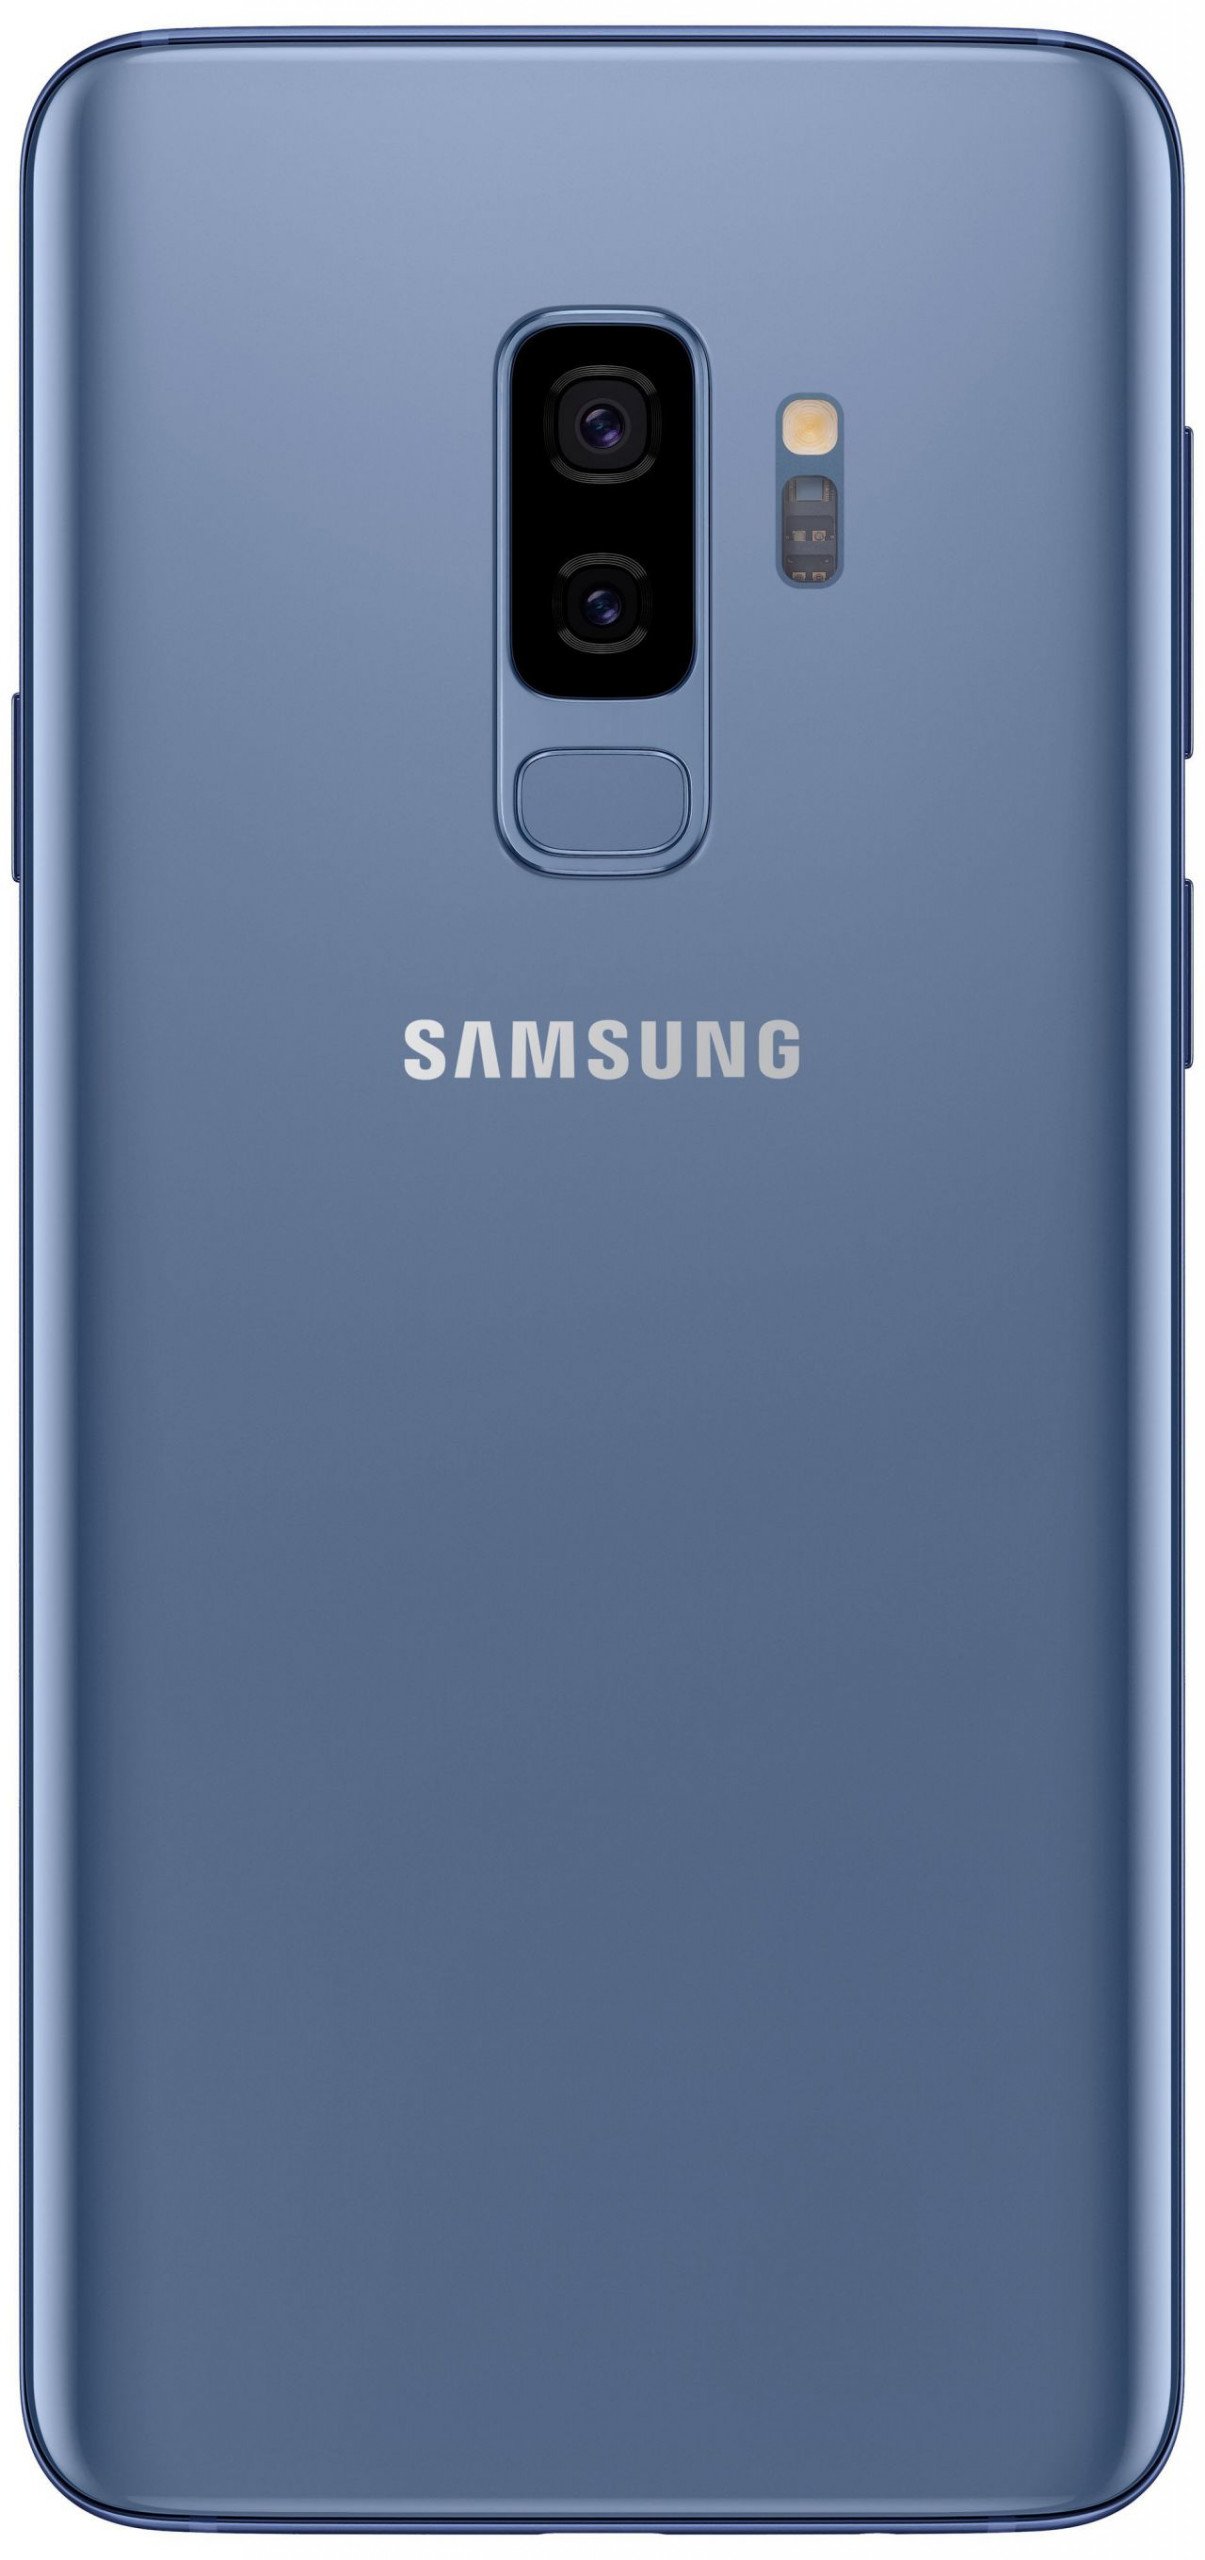 Samsung Galaxy S9 ve Galaxy S9+ Tasarımı